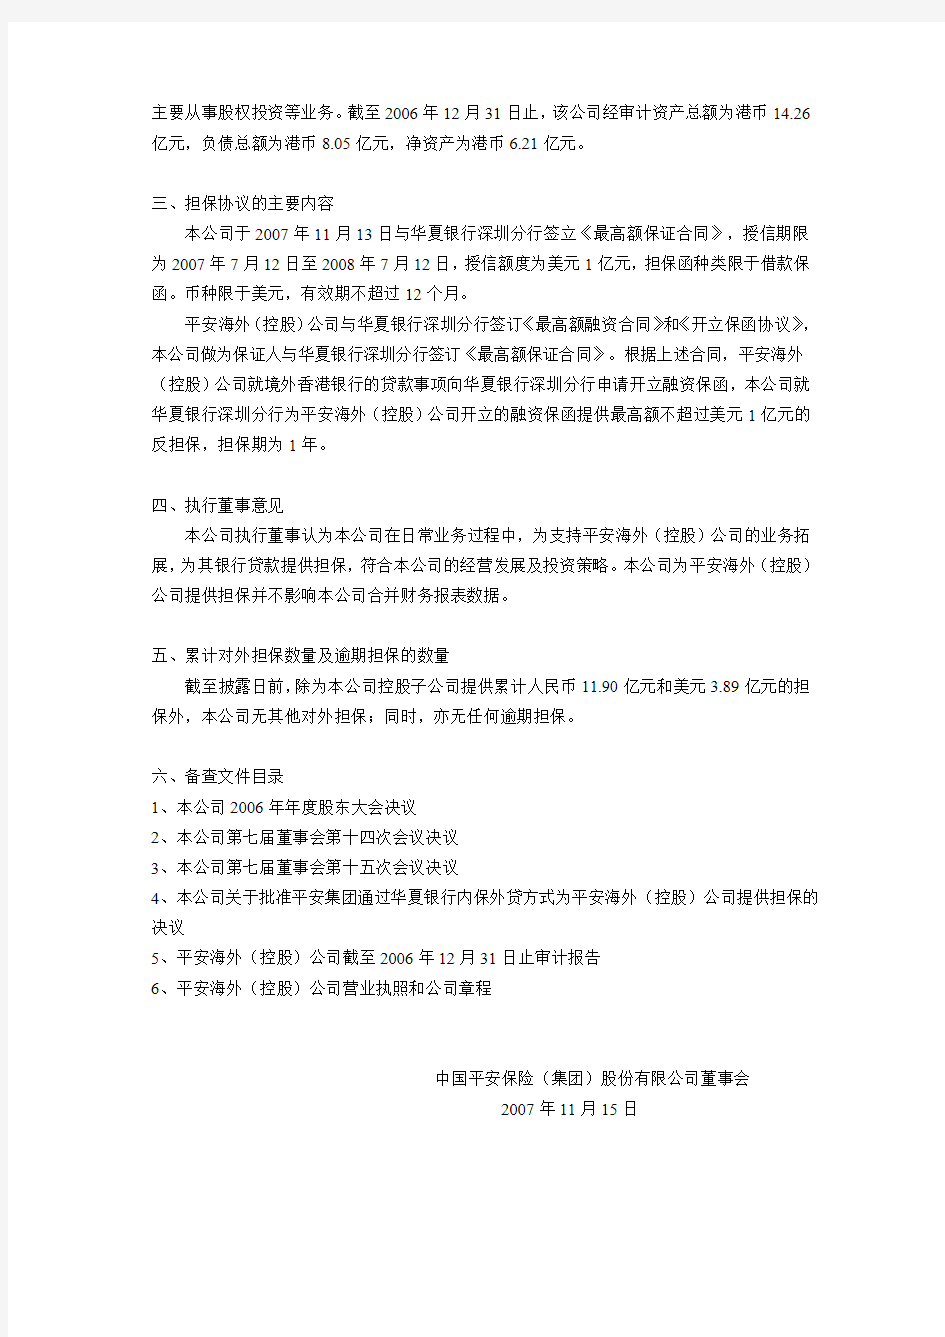 中国平安保险(集团)股份有限公司 关于对中国平安保险 …